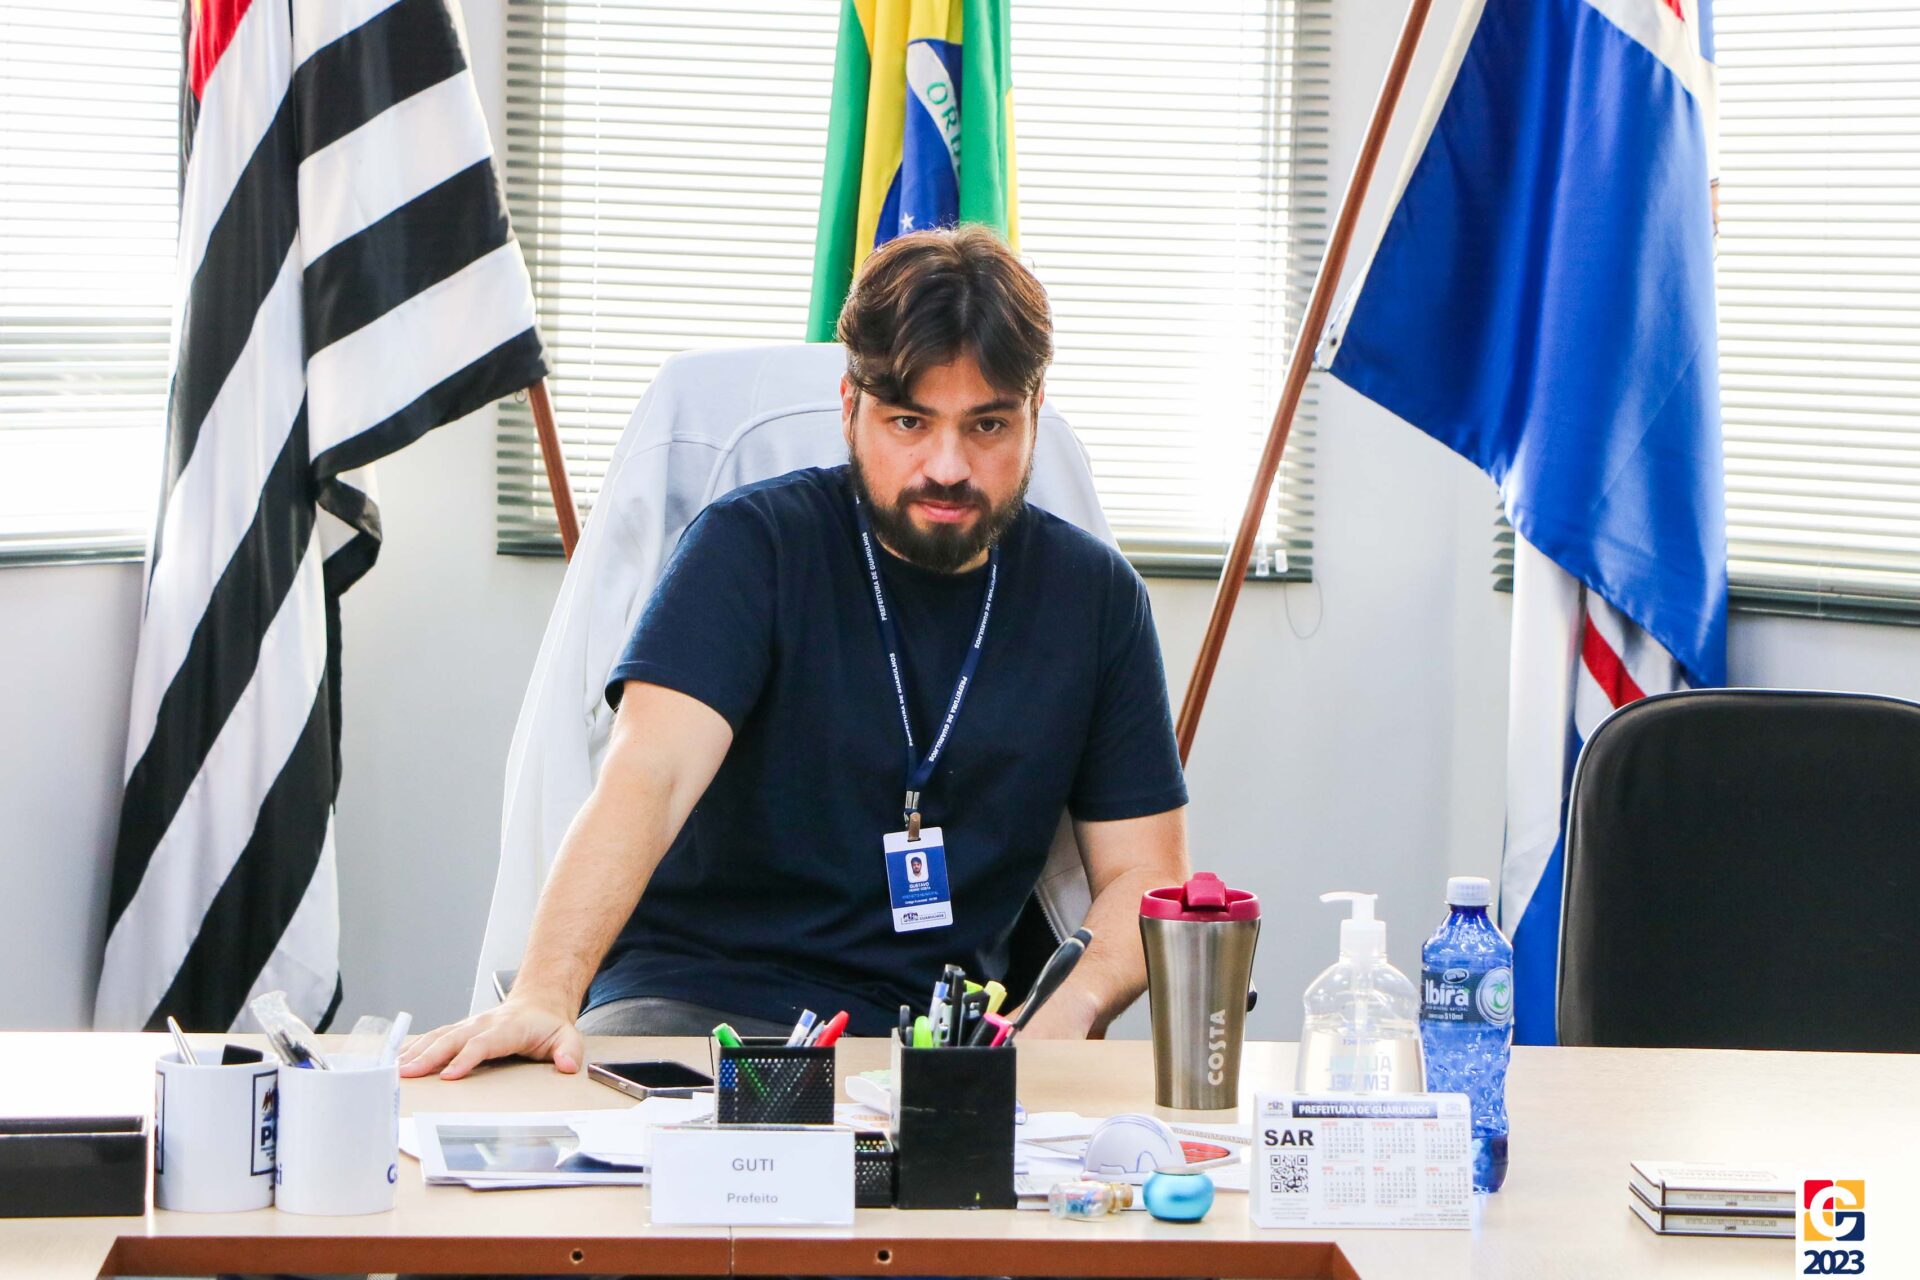 Prefeito Guti, de Guarulhos, em reunião com alunos do Colégio Carbonell.